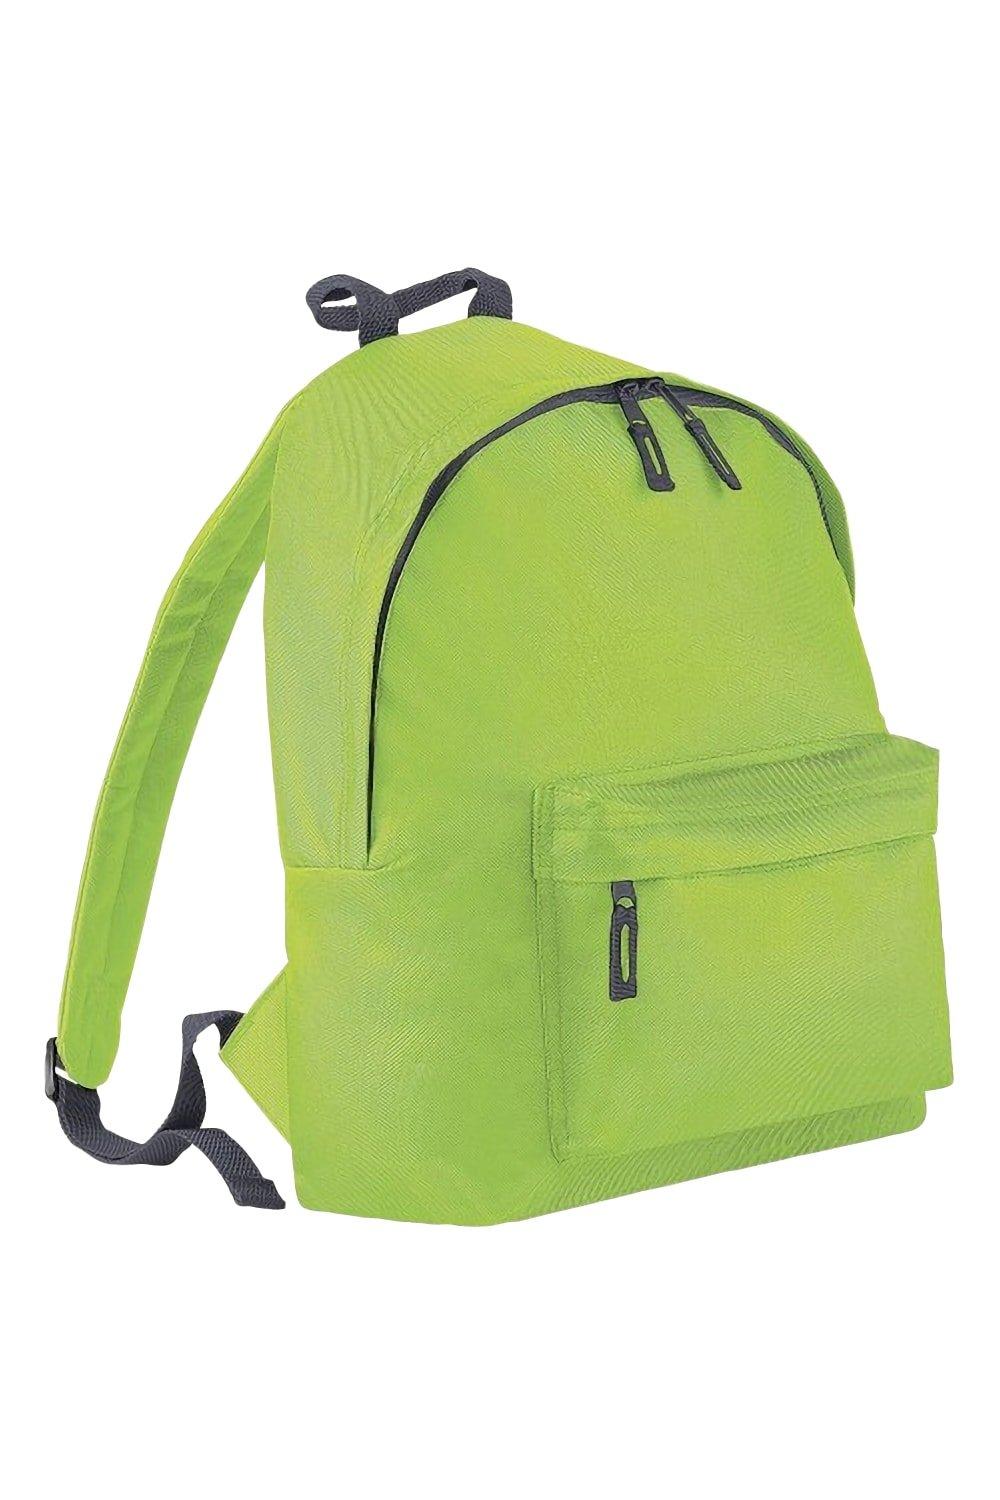 Модный рюкзак / рюкзак (14 литров) (2 шт. в упаковке) Bagbase, зеленый trixie купалка для хомяков и мышей дерево 22 х 12 х 12 см 63004 0 325 кг 56348 1 шт